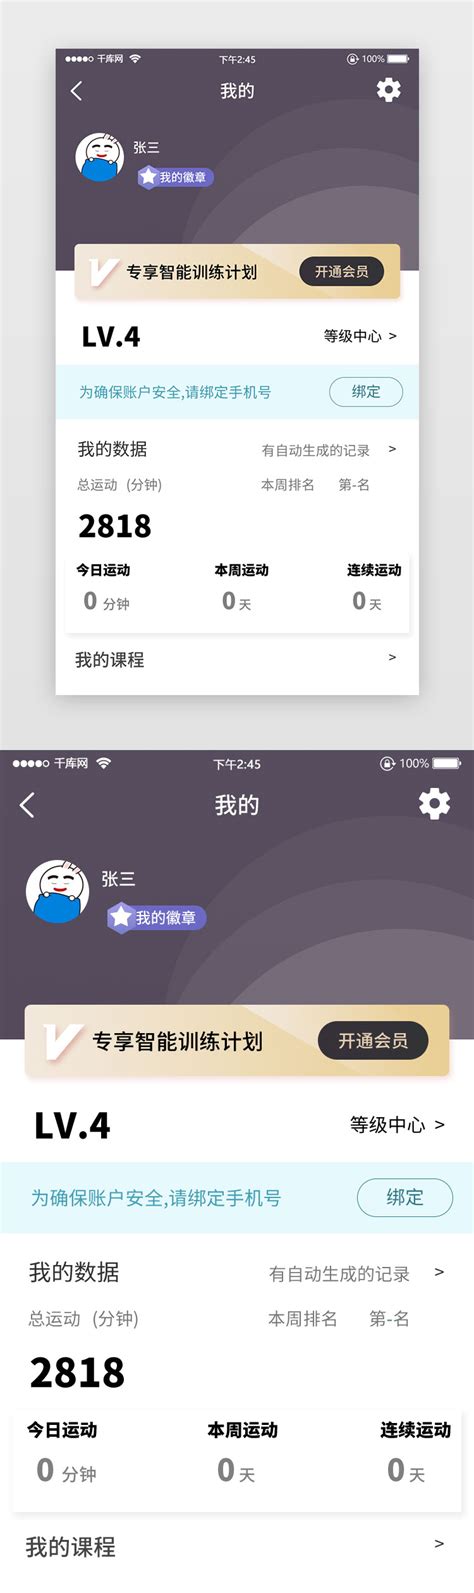 千图网app官方下载-千图网app下载v1.0 安卓版-安粉丝网